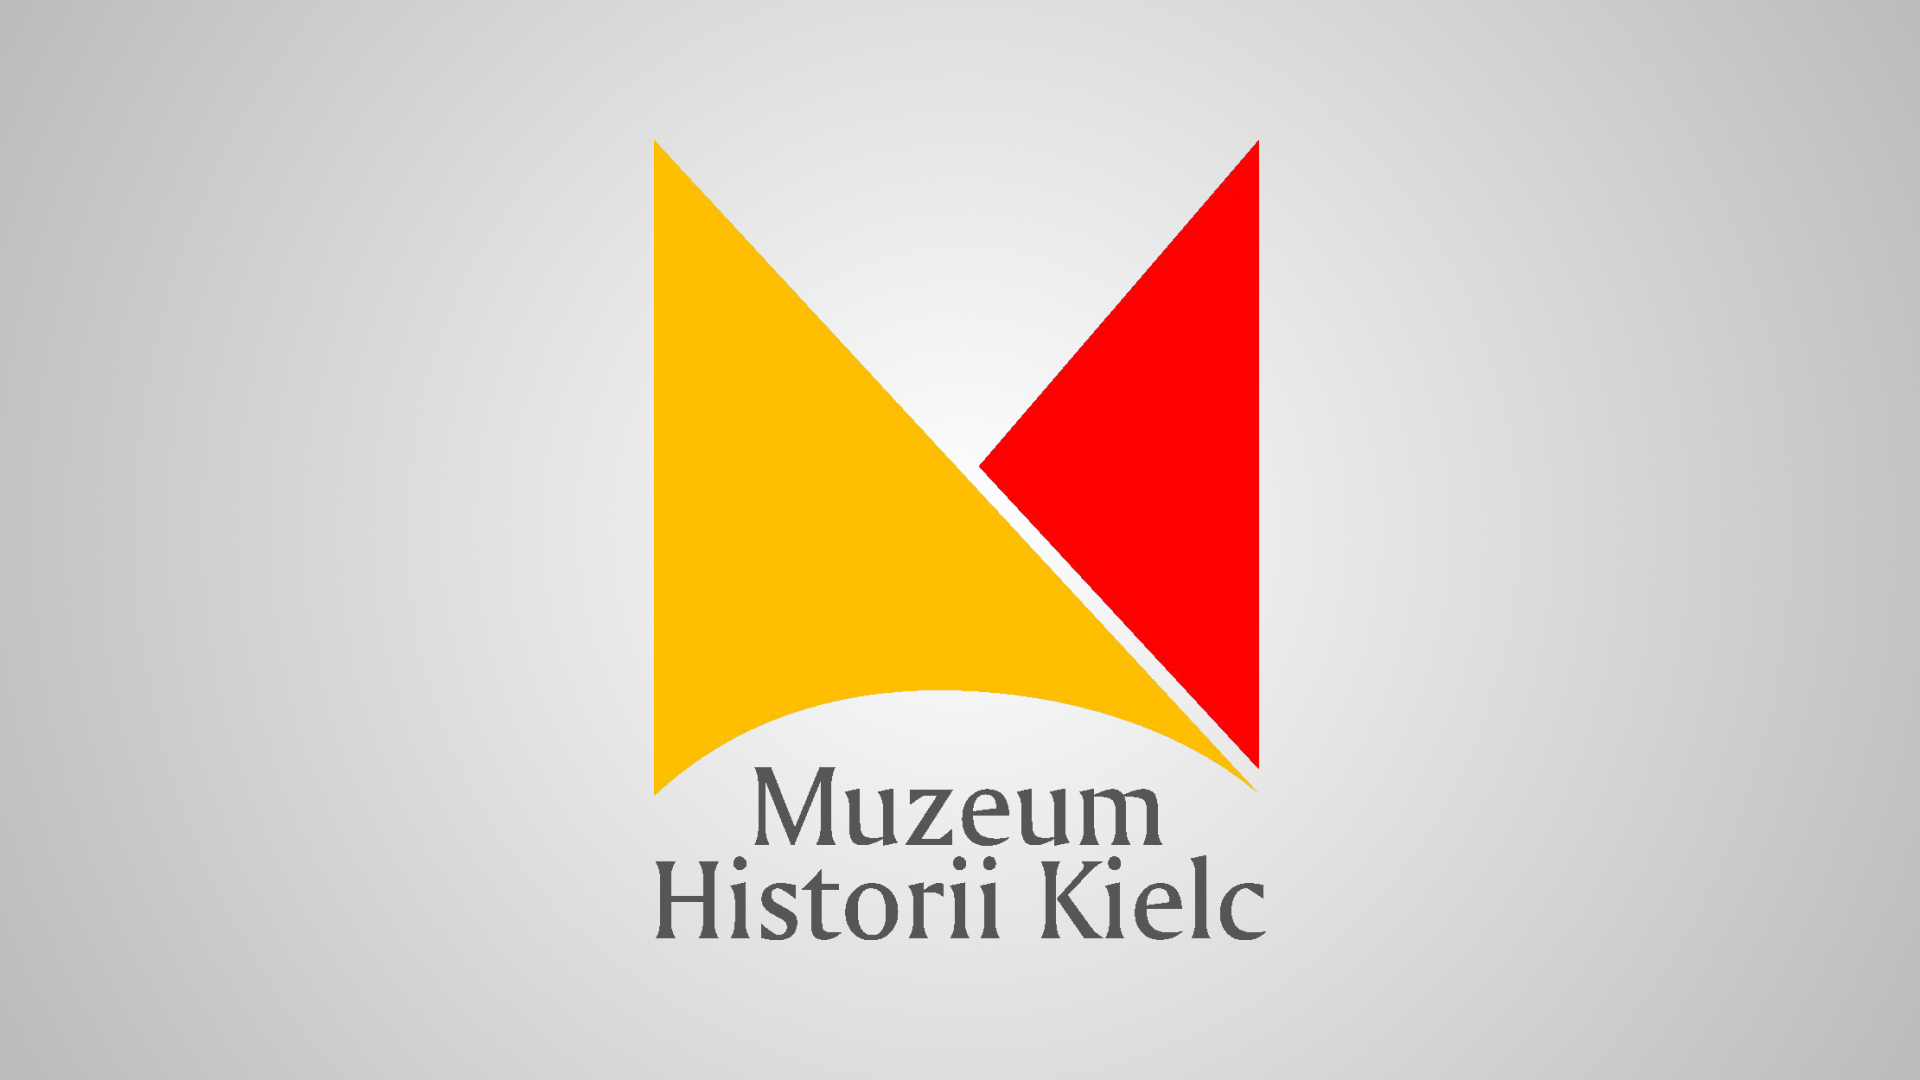 LOGO - Muzeum Historii Kielc.png